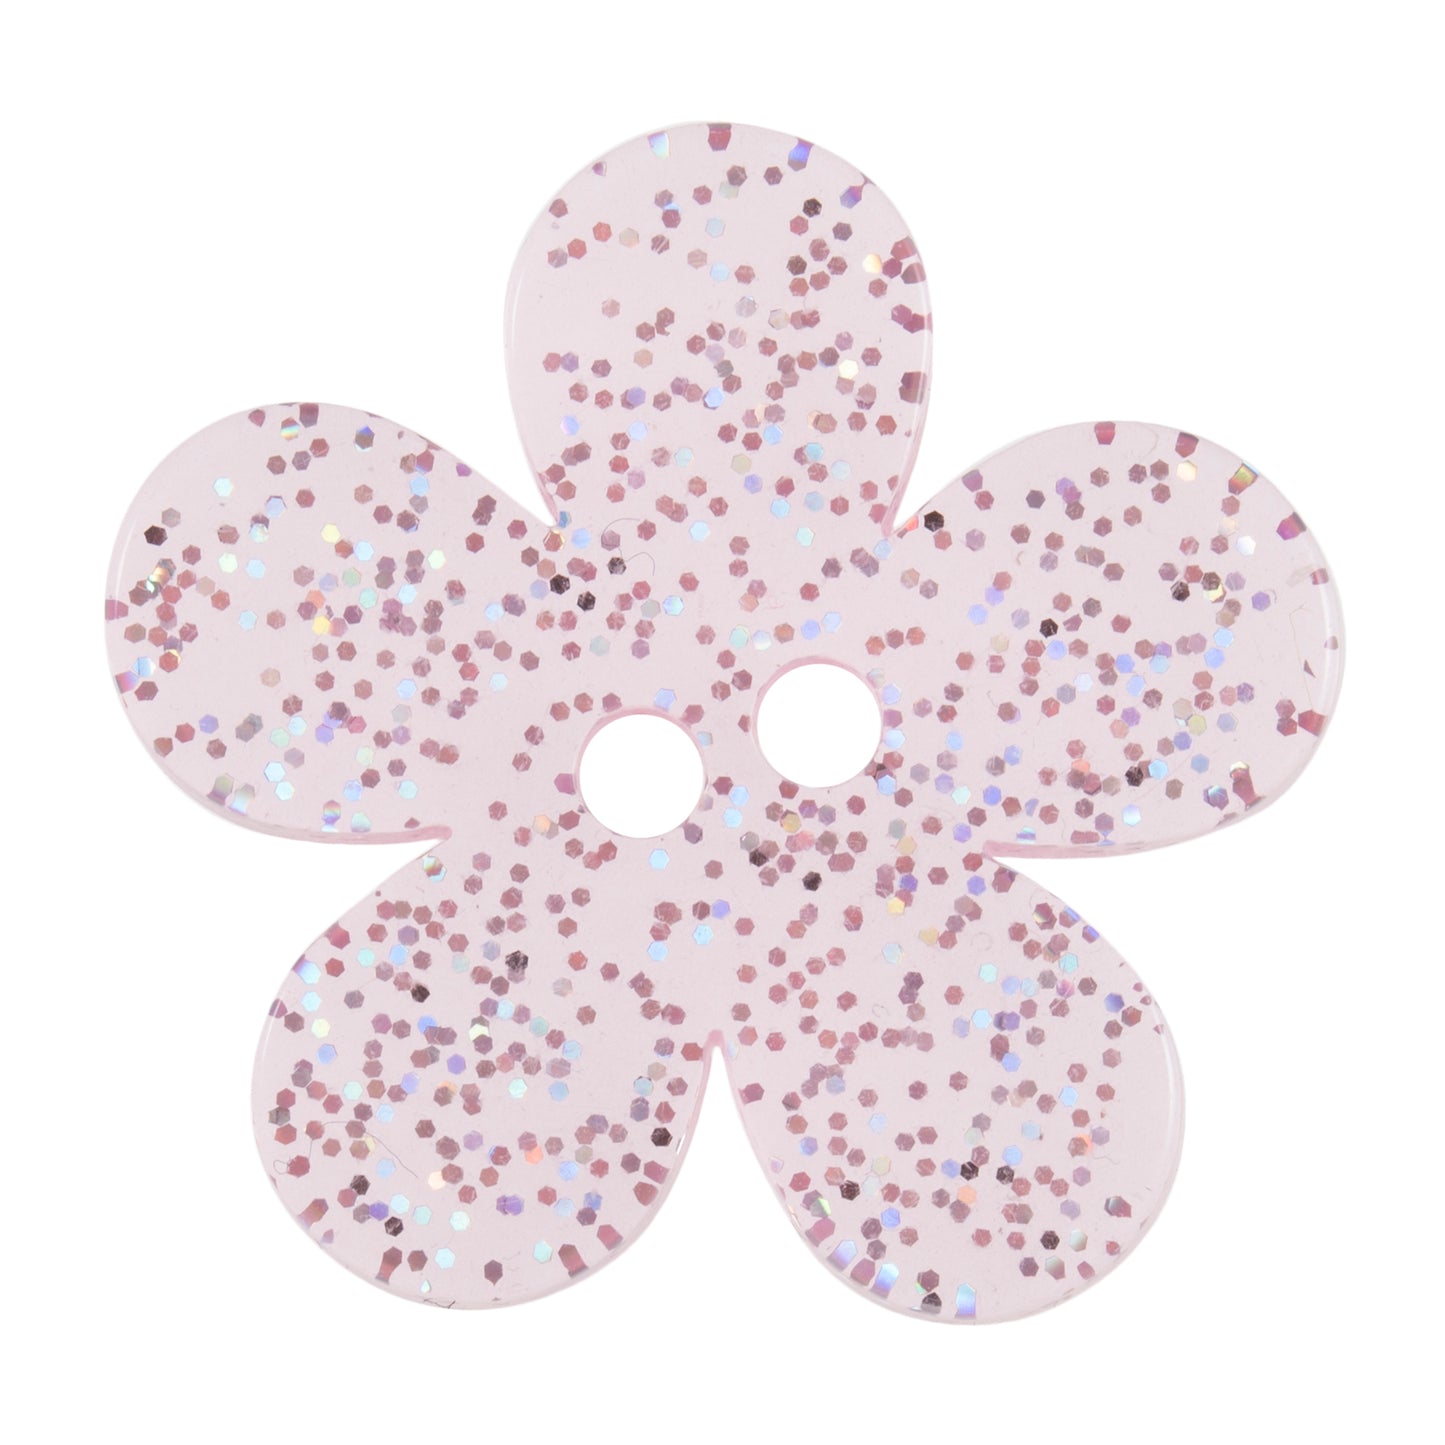 2 Hole Transparent Flower Glitter Button - 32mm - Light Pink